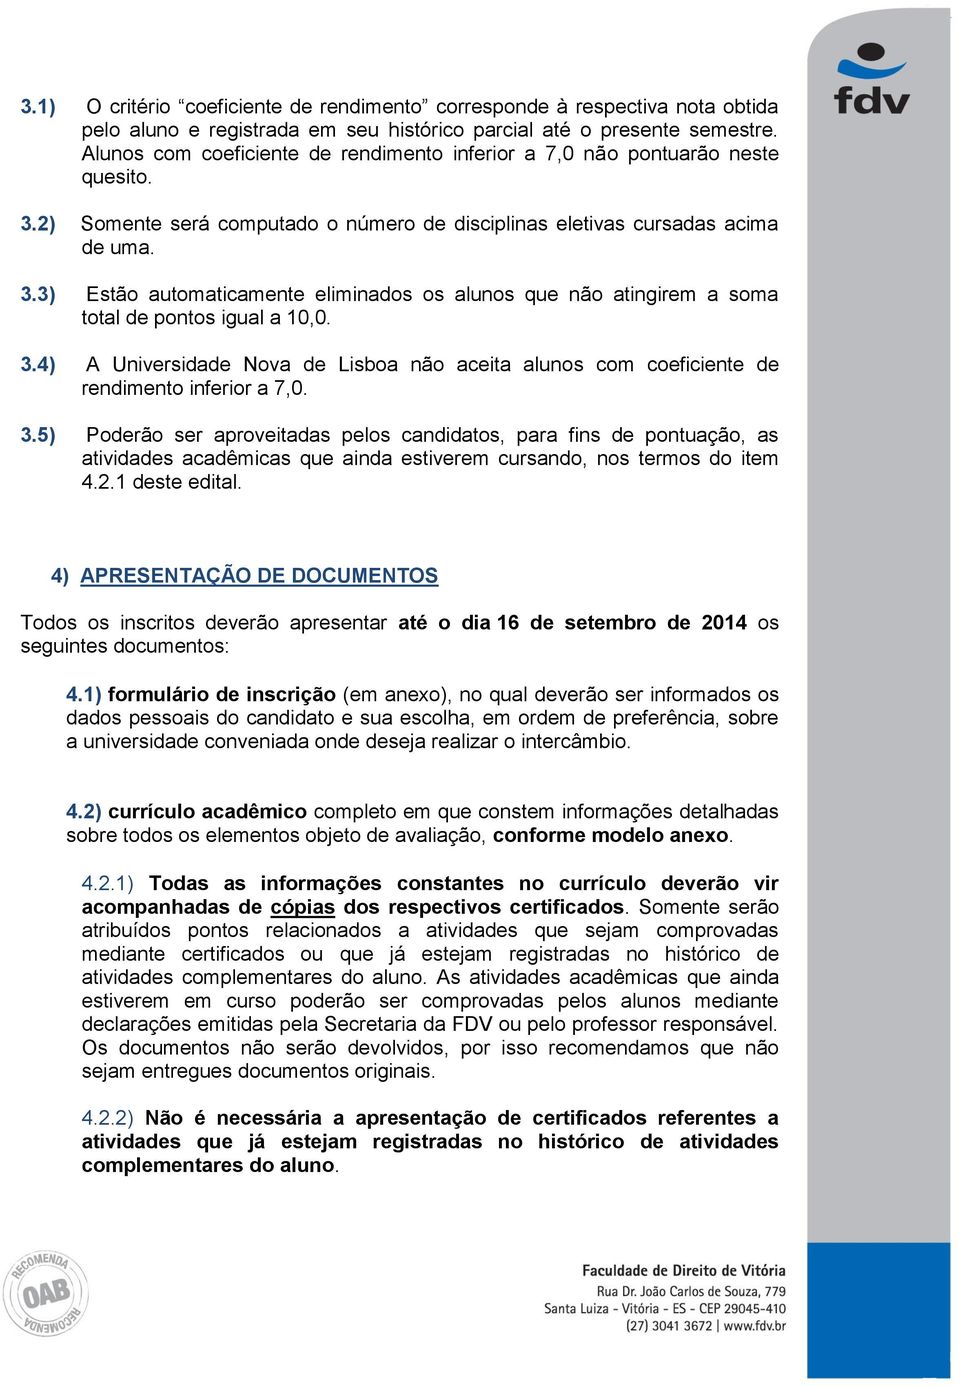 3.4) A Universidade Nova de Lisboa não aceita alunos com coeficiente de rendimento inferior a 7,0. 3.